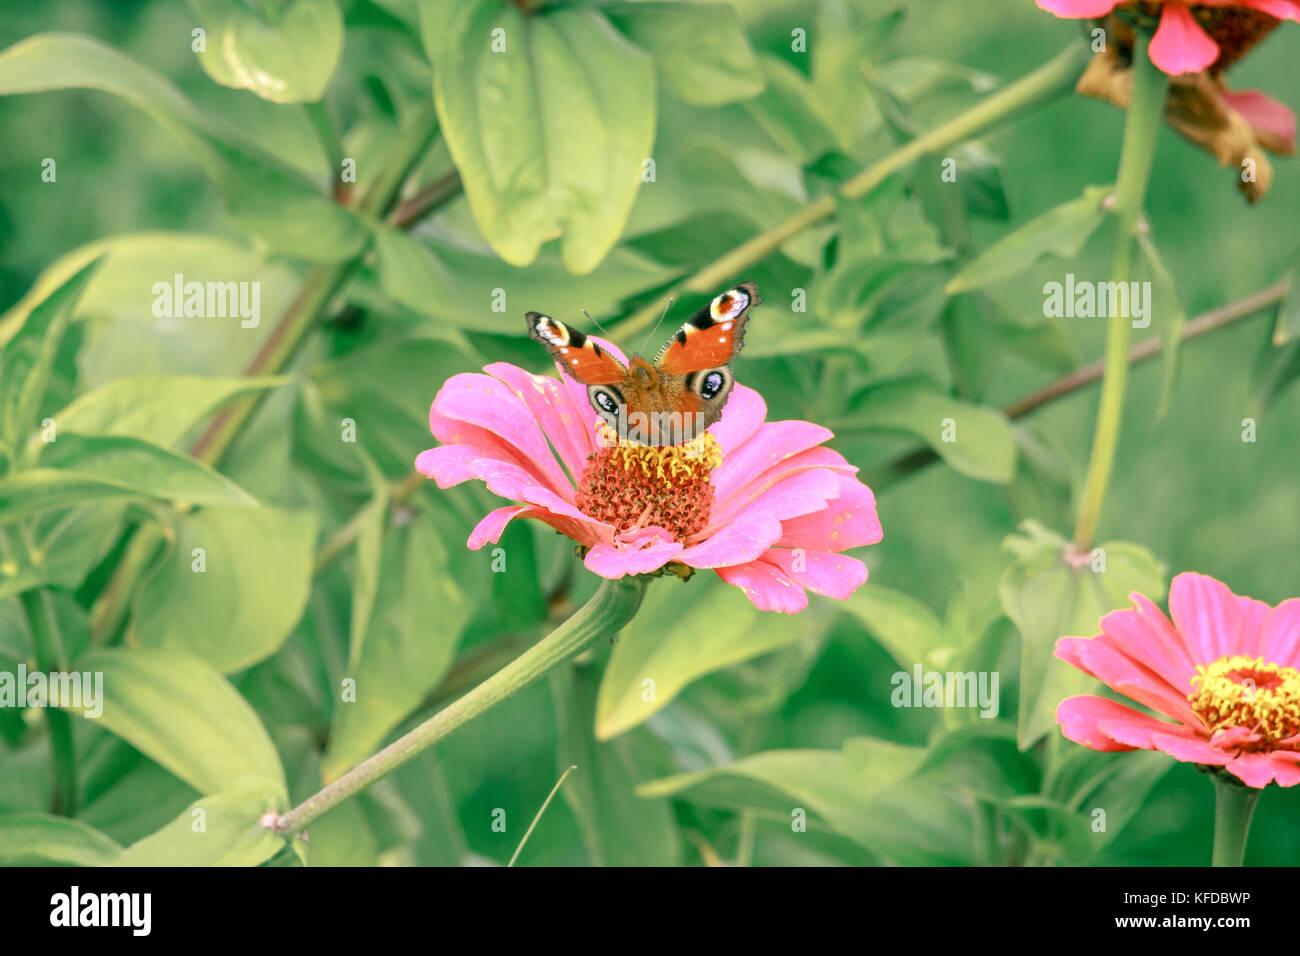 Cerrar acuerdo de insecto mariposa pavo real de flor en flor en el jardín de plantas de Bush naturaleza recogiendo polen o néctar en verano Foto de stock